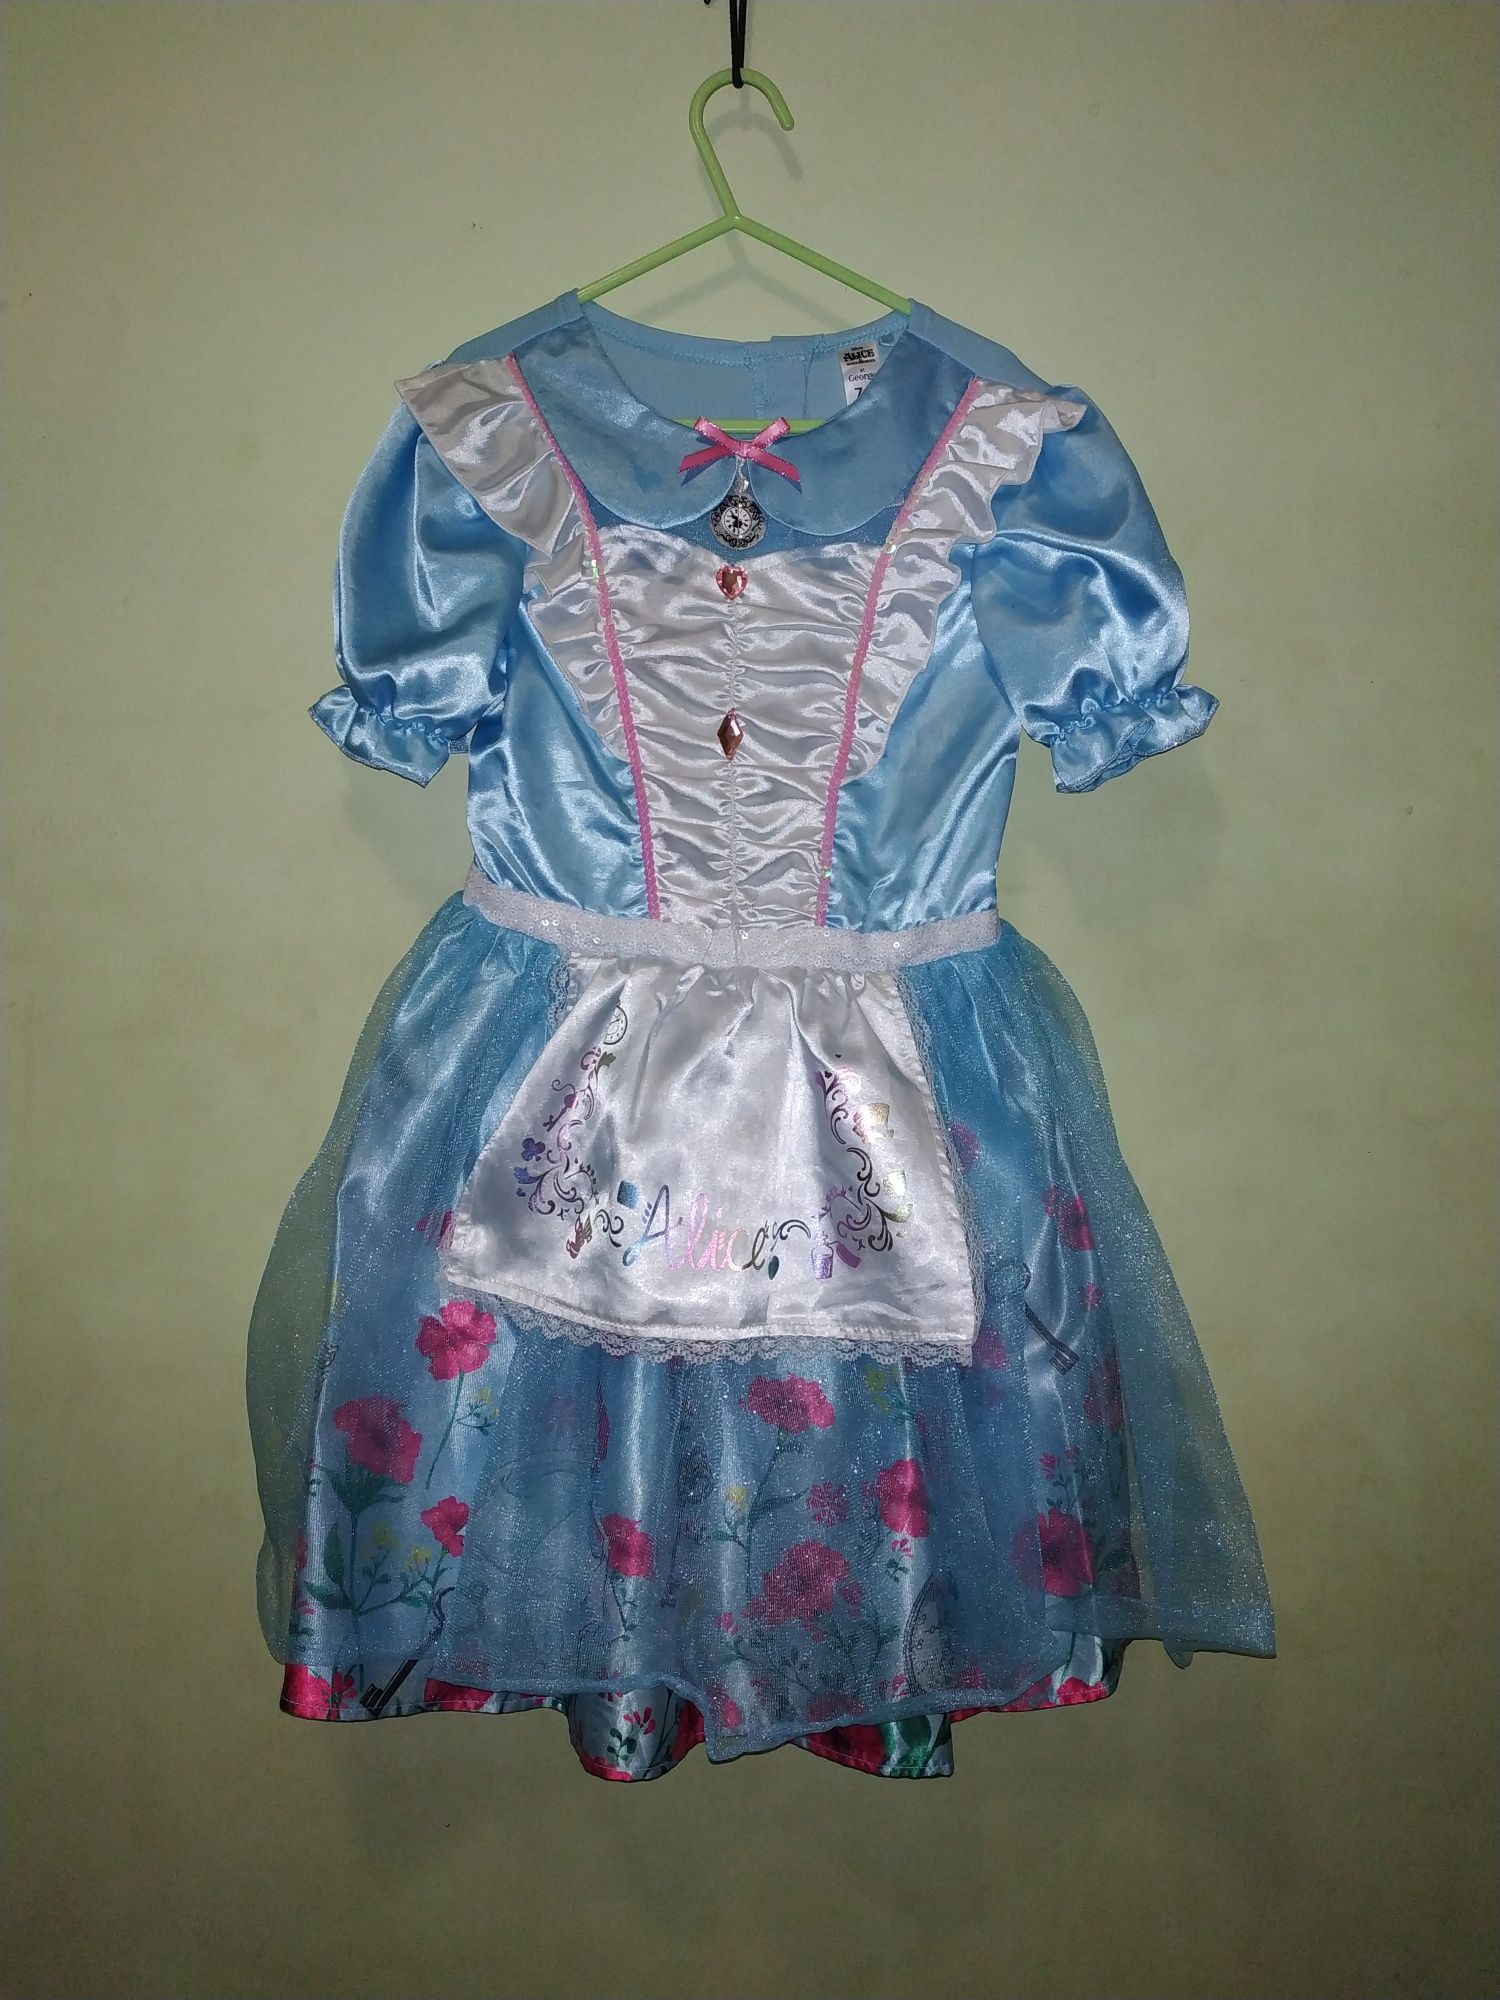 Платье Алисы в стране чудес